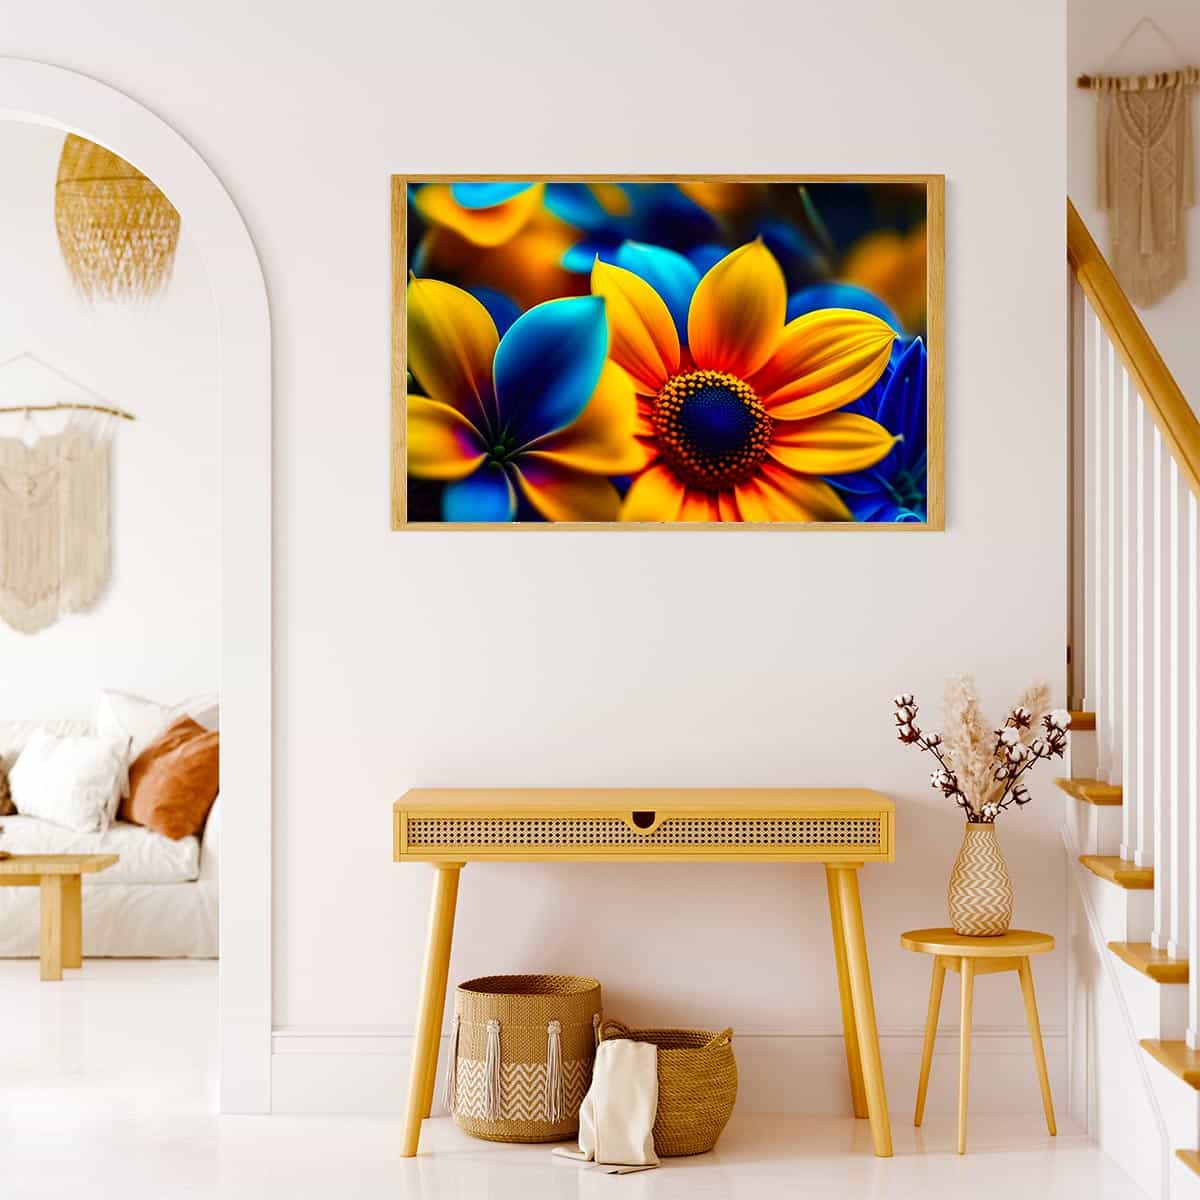 Diamond Painting - Gelb und Blaue Sonnenblume - gedruckt in Ultra-HD - Blumen, Horizontal, Sonnenblume